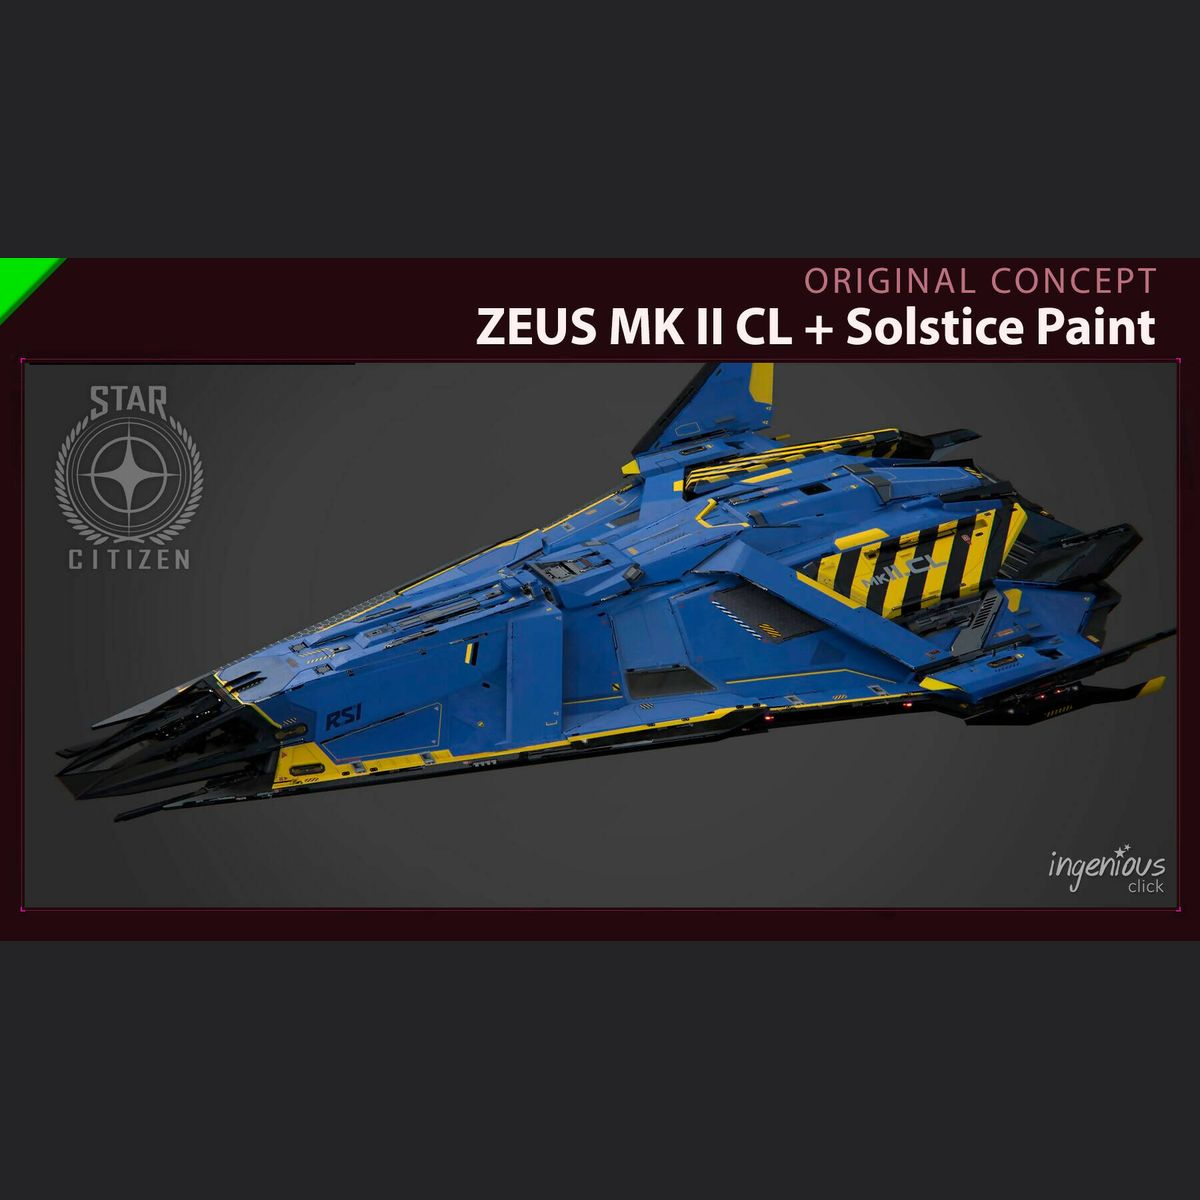 ZEUS MK II CL with Solstice Paint - Original Concept